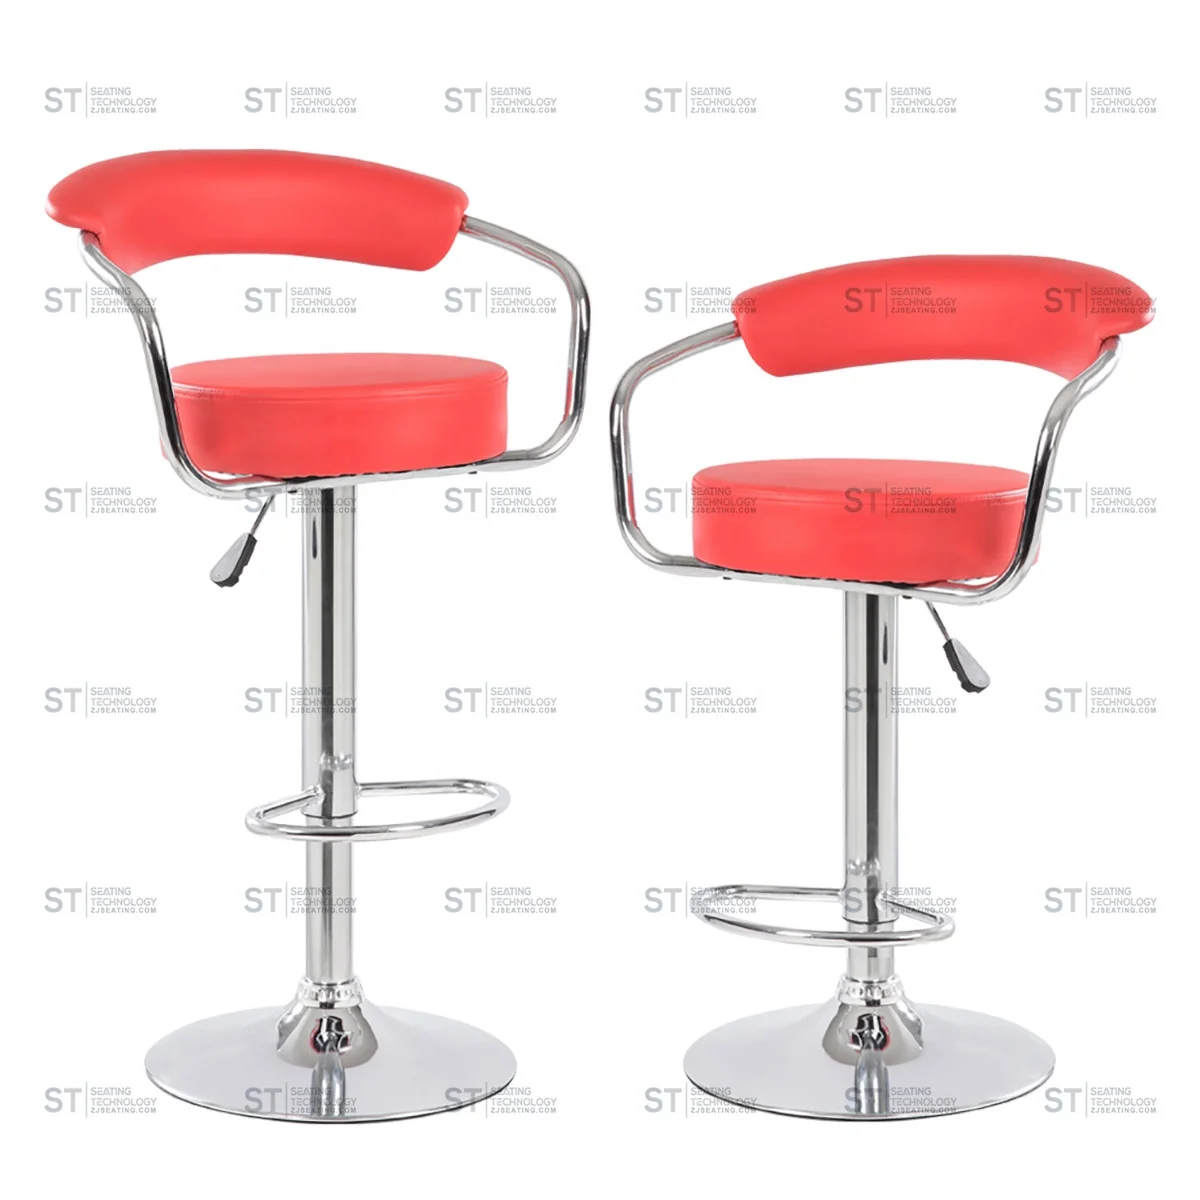 Новая фабричная ультра-дешевая оптовая цена из искусственной кожи ST 5009 современная кухня для стула барные стулья